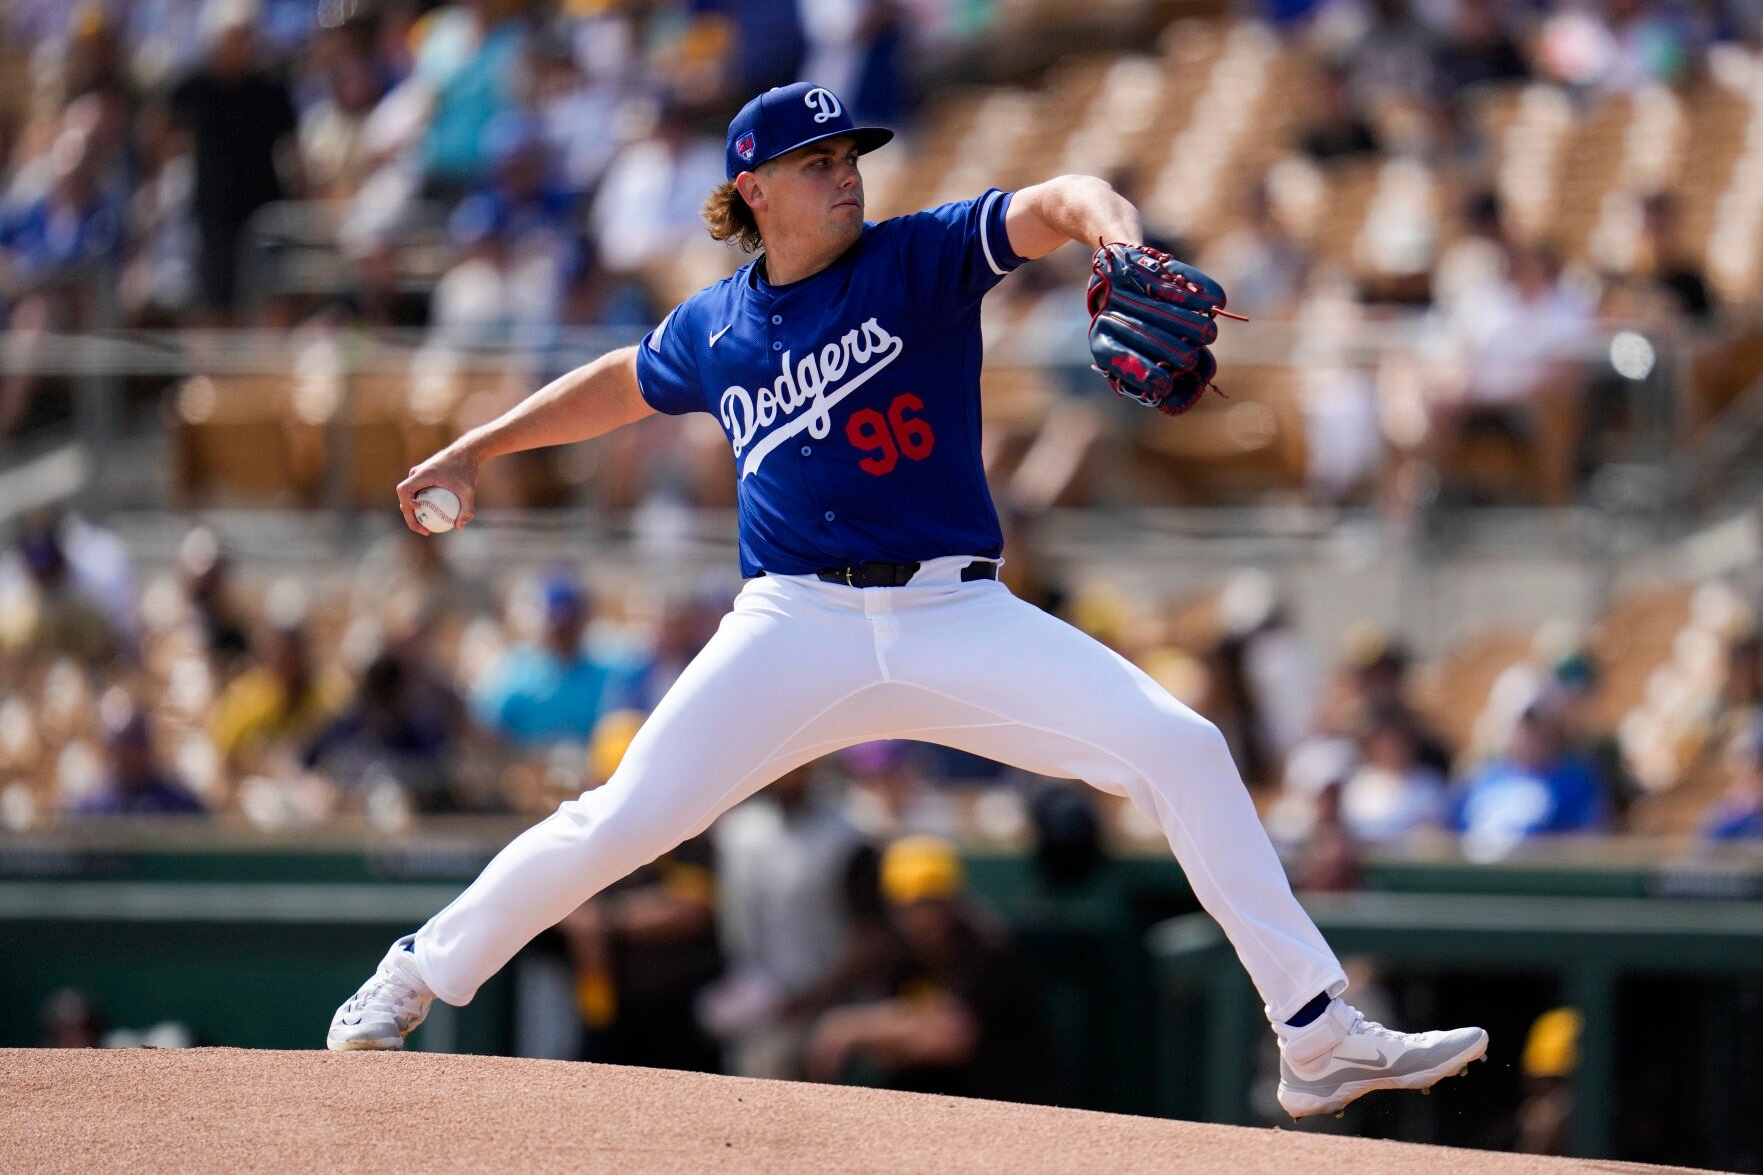 Science Hill’den Landon Knack, LA Dodgers adına Atıcı Olarak Kazanmayı Garantiledi;  Elizabethton’dan Evan Carter, Zaferde Rangers Koşusunda Yarışıyor